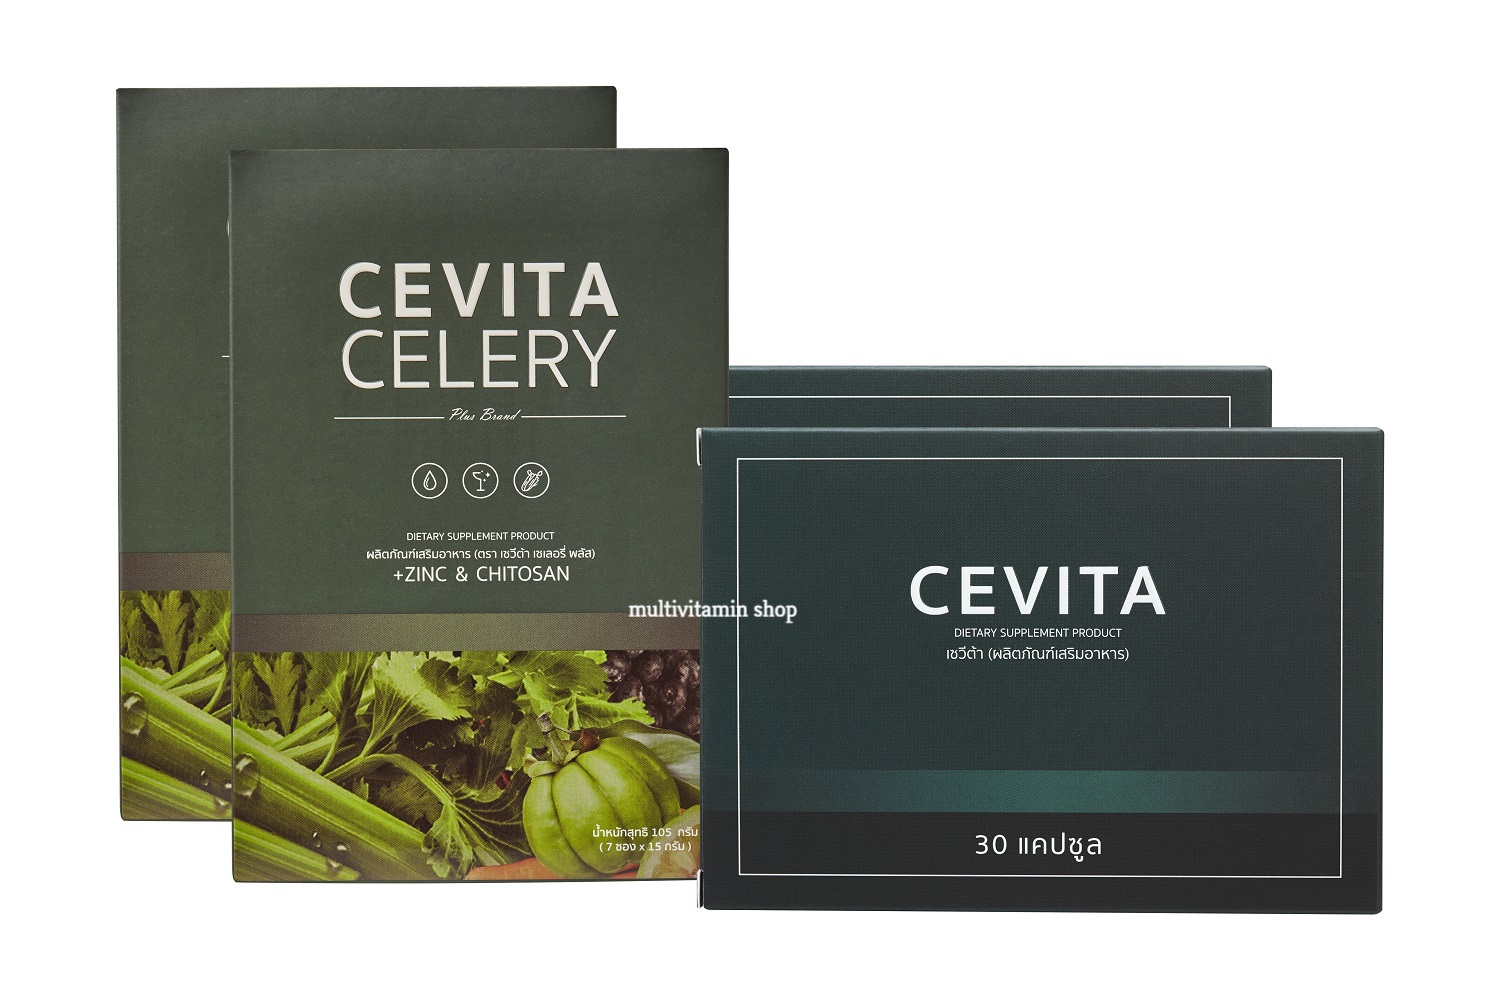 CEVITA CELERY เซวีต้า นํ้าผักชงดื่ม น้ำผักดูดไขมัน ควบคุมนํ้าหนัก ลดไขมัน ลดพุง หน้าท้องยุบ ปรับสมดุลระบบขับถ่าย ดีท็อกซ์ Detox 2 Set